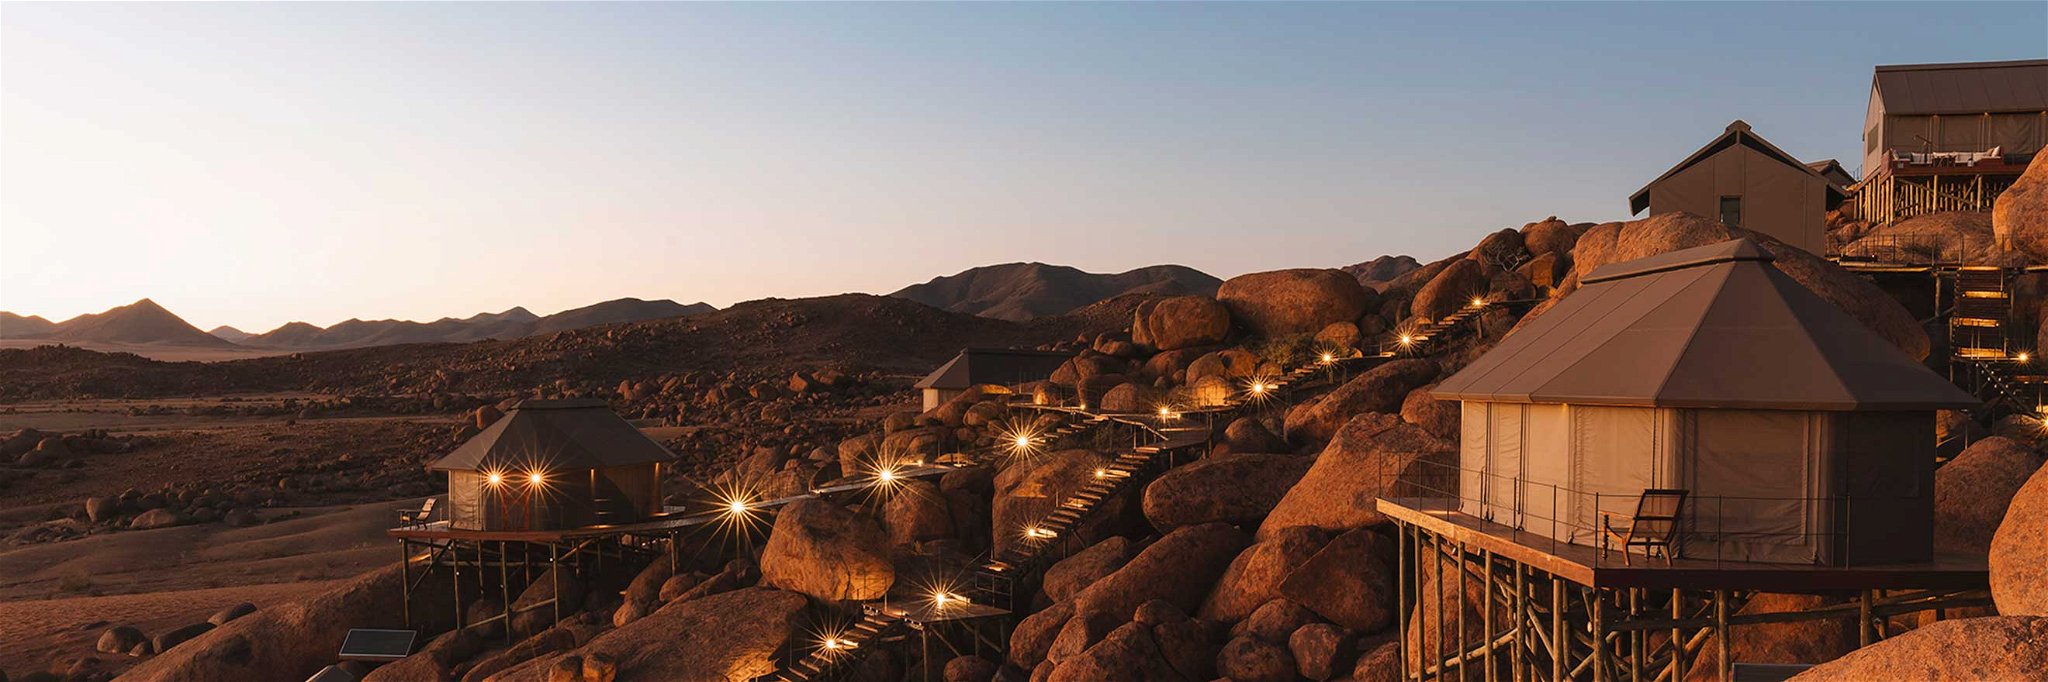 Das Camp bietet eine spektakuläre Aussicht auf die älteste Wüste der Welt.